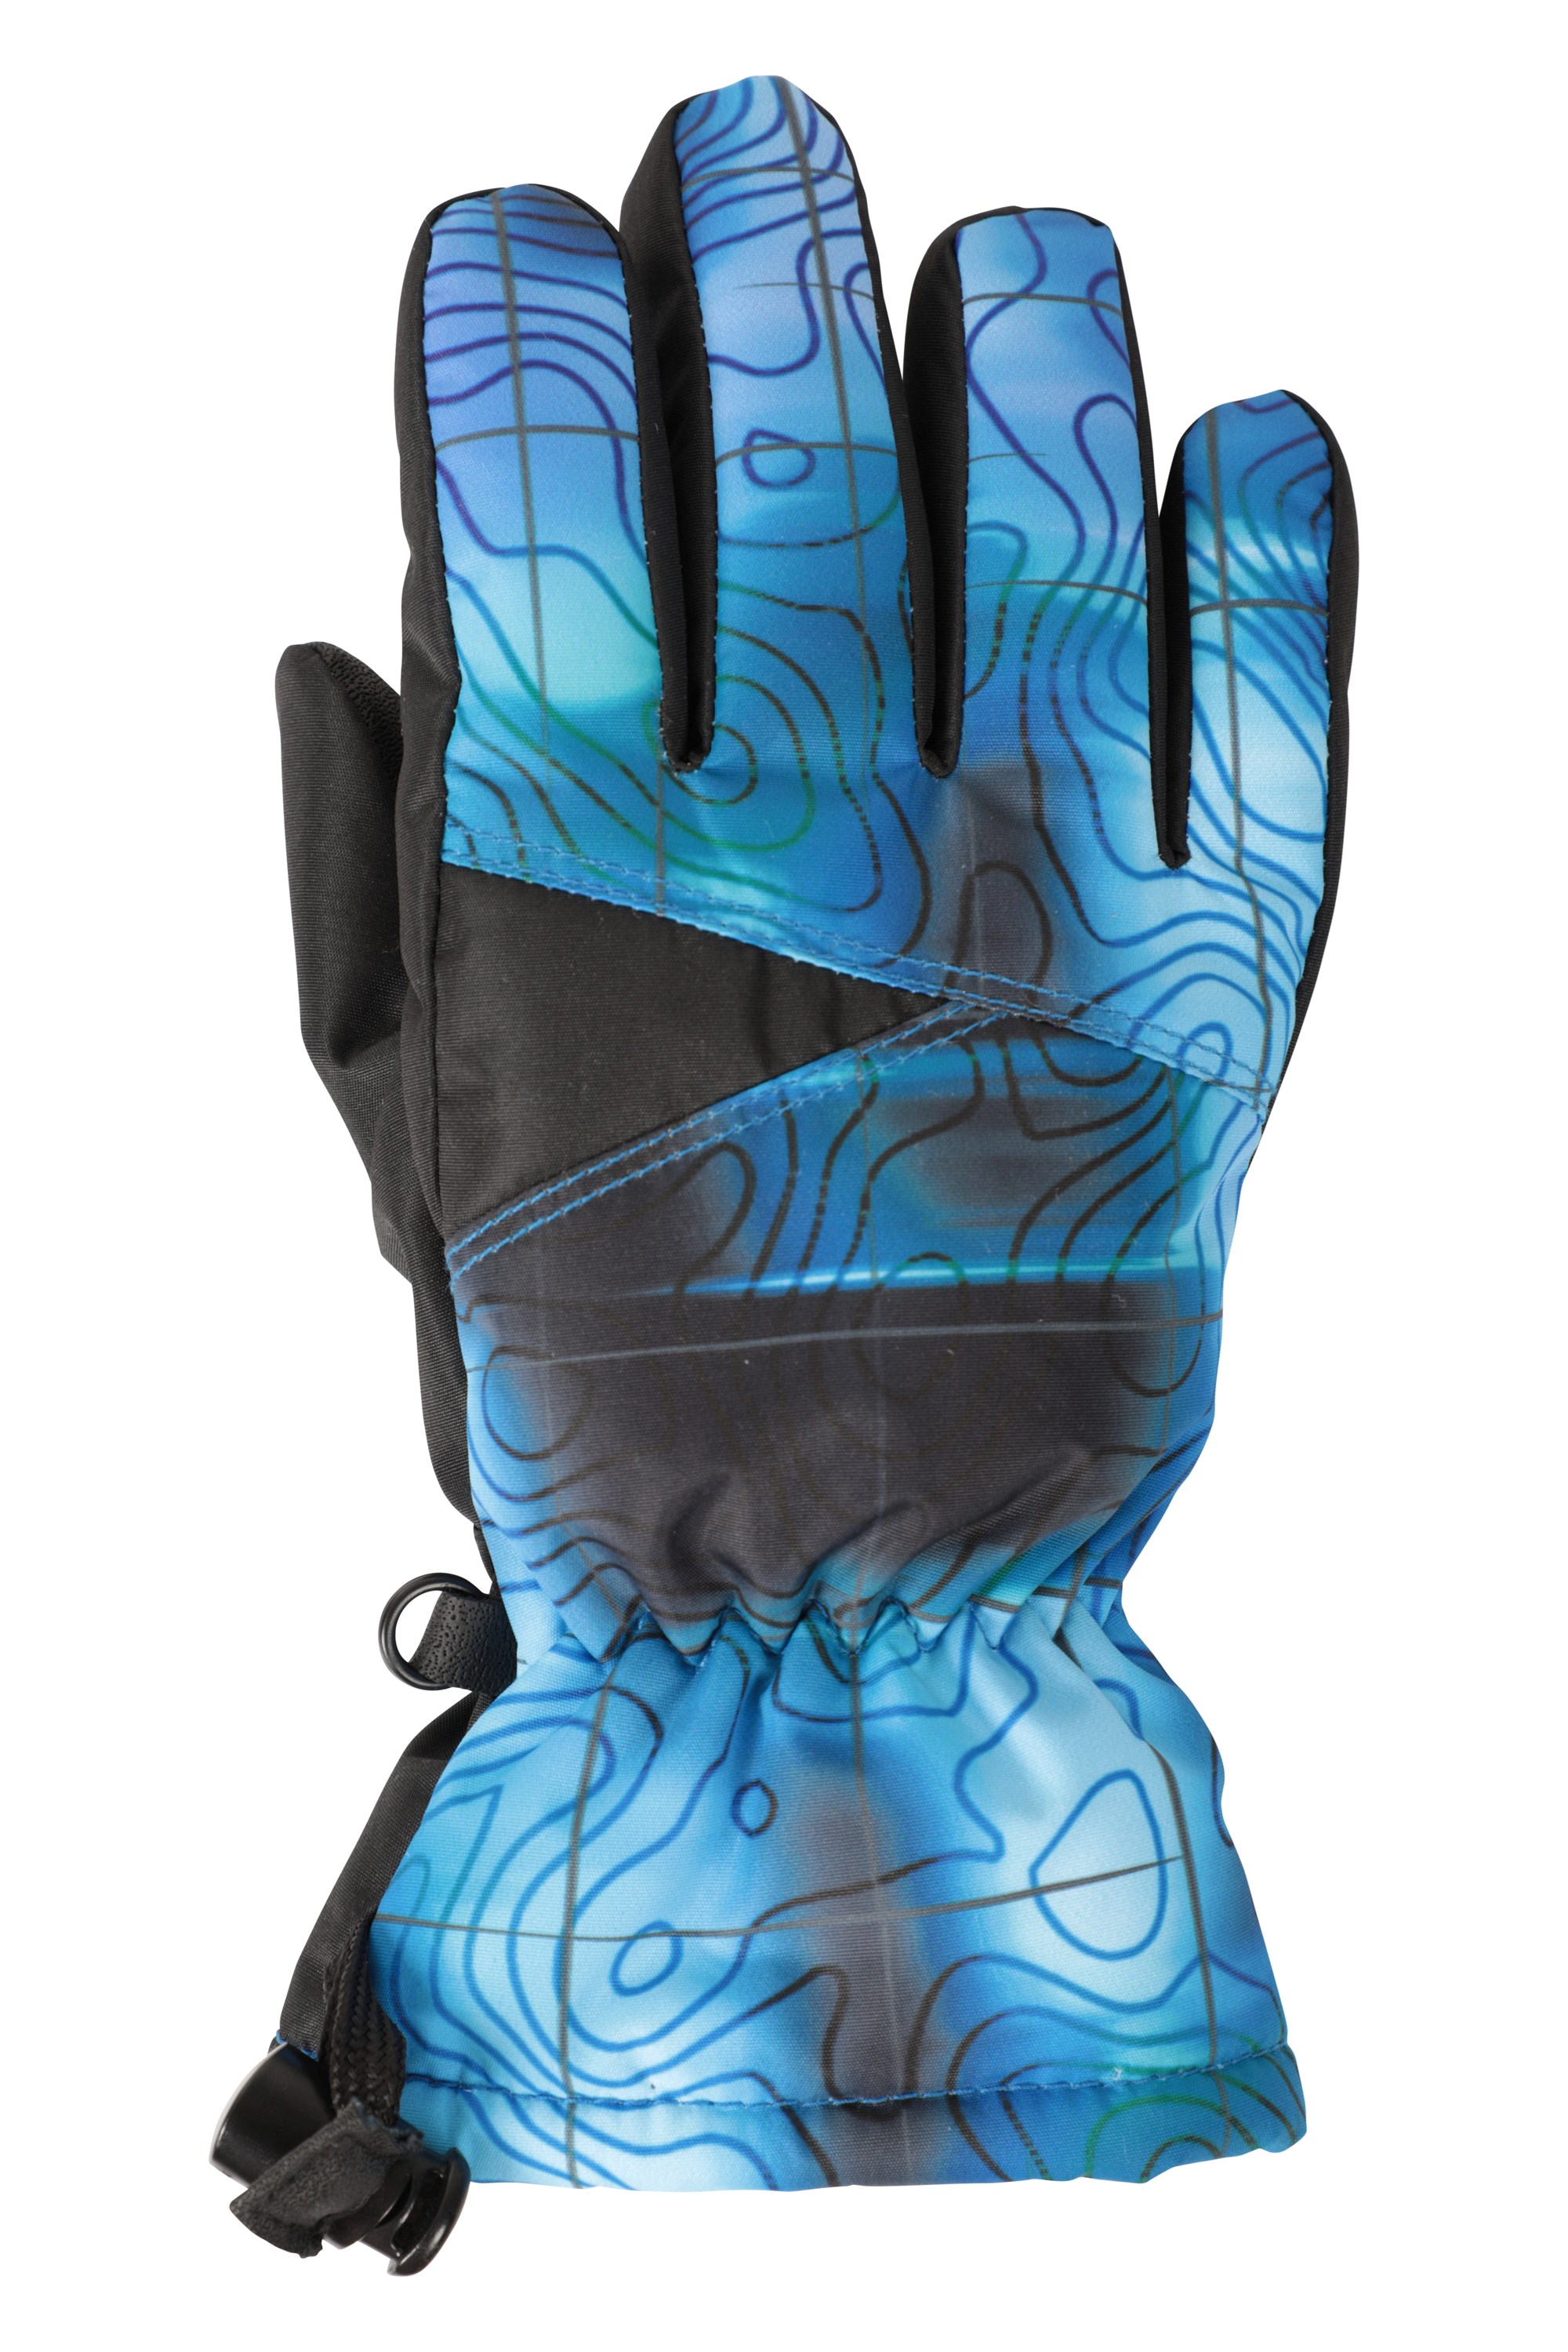 Kids' Waterproof Warm Gloves - Ski 500 JR Blue/Black - Deep teal